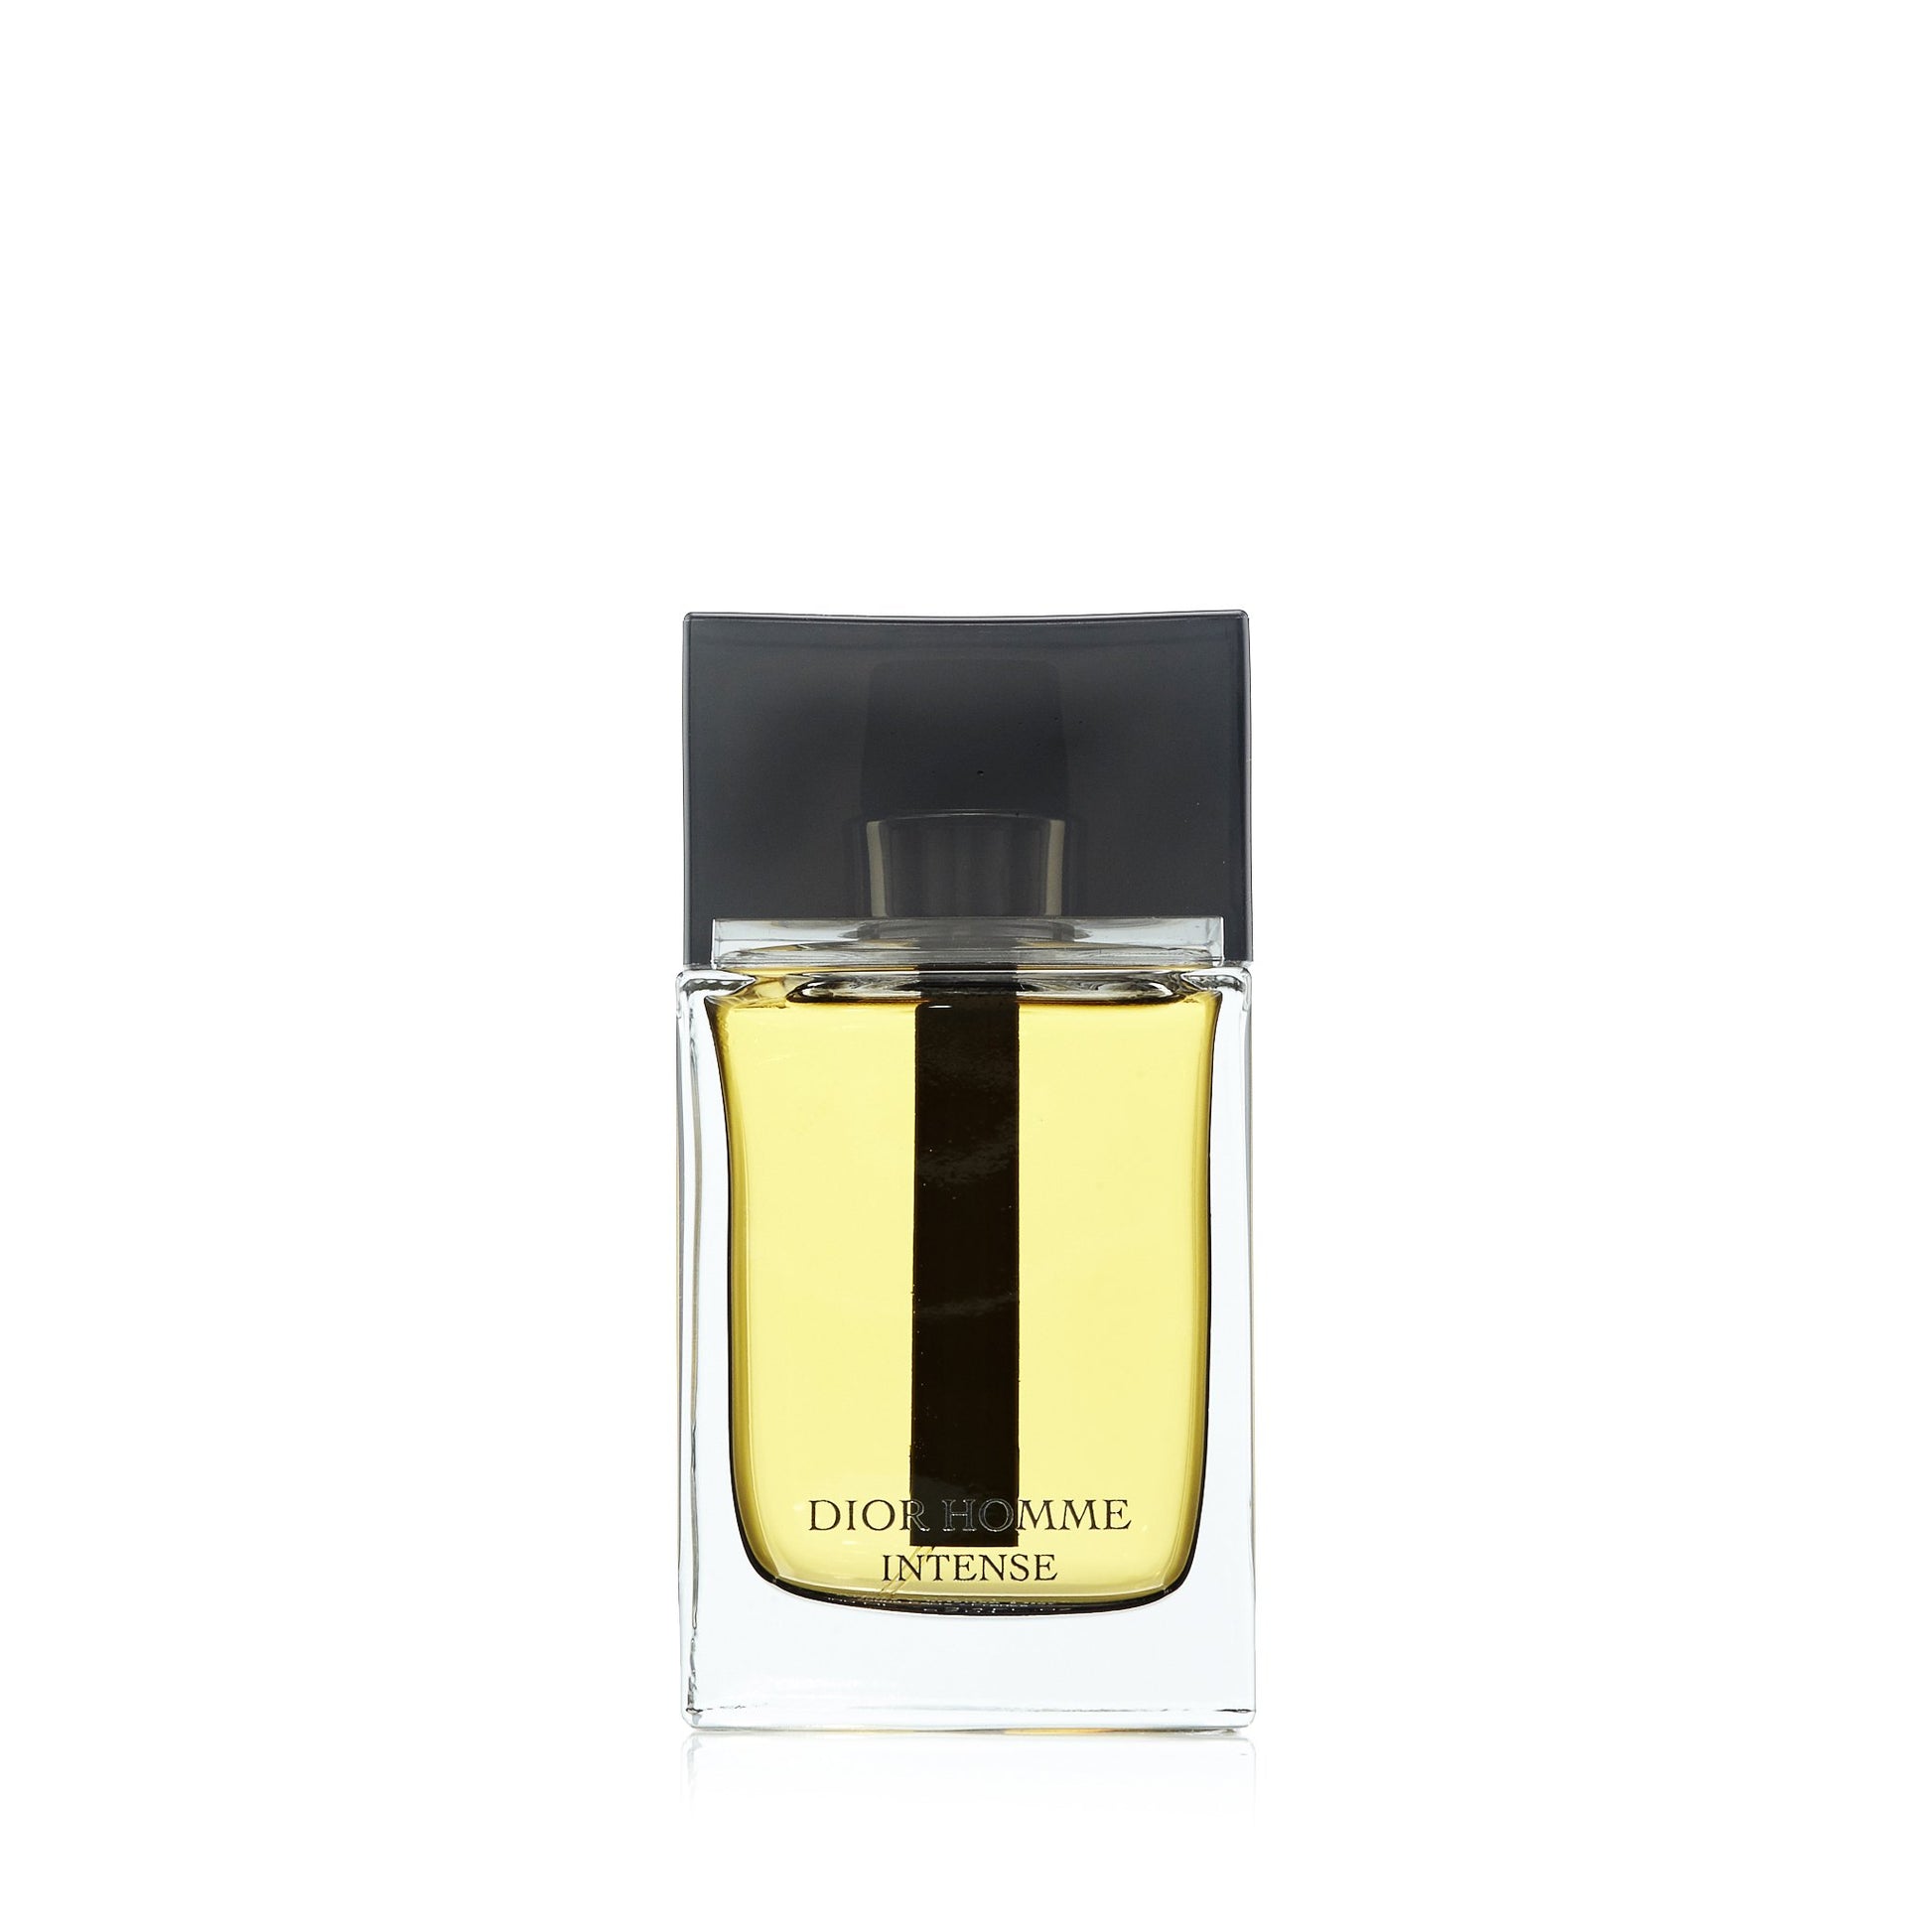 Dior Homme Intense Eau de Parfum Spray for Men by Dior, Product image 1